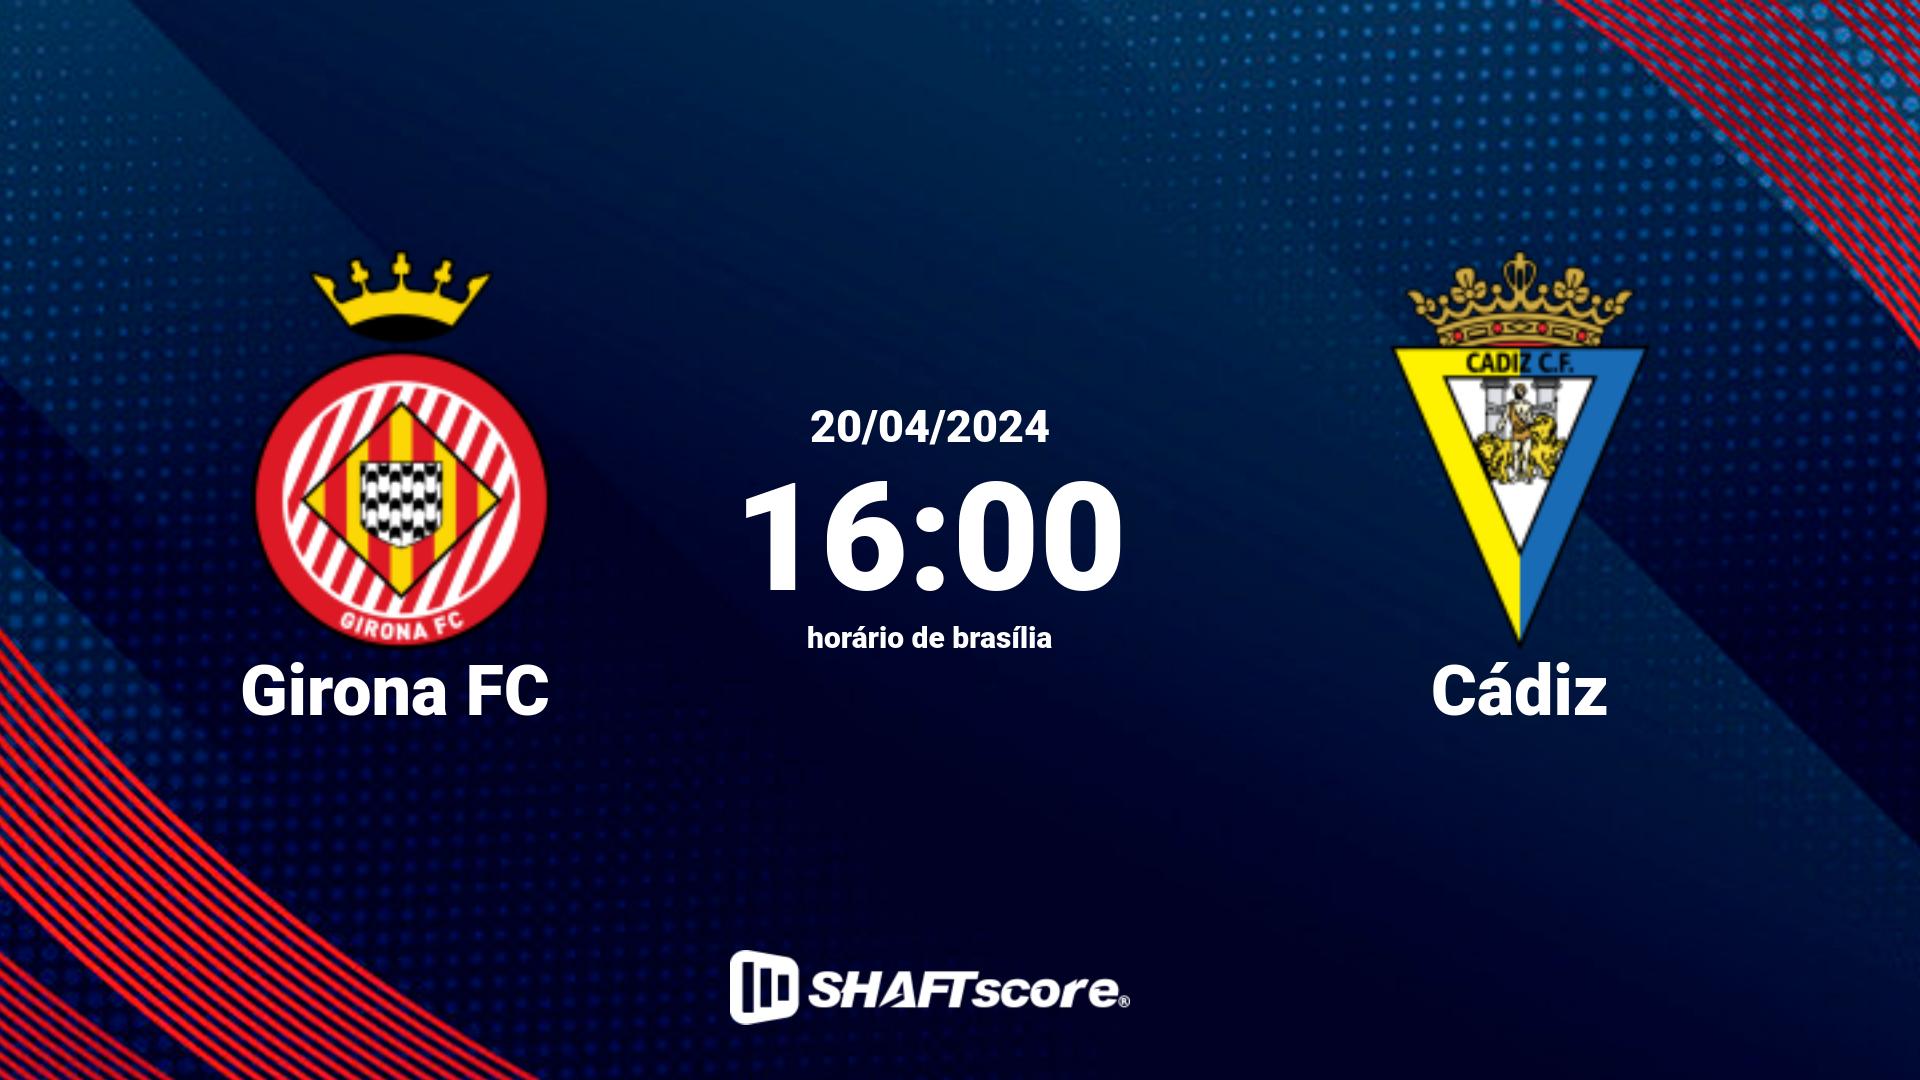 Estatísticas do jogo Girona FC vs Cádiz 20.04 16:00